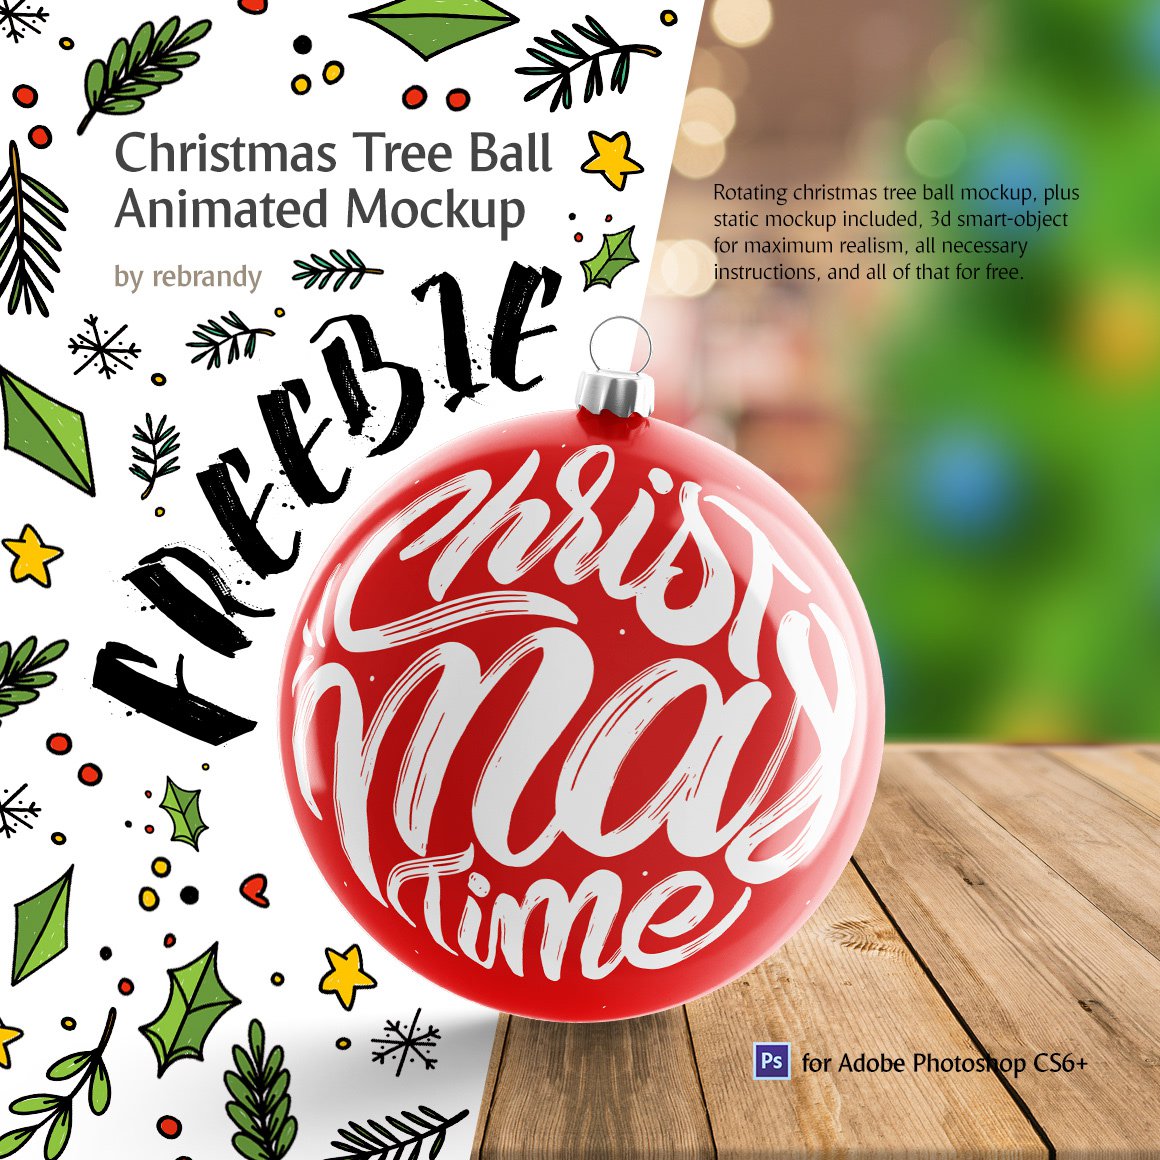 Christmas Tree Ball Animated Mockup PSD